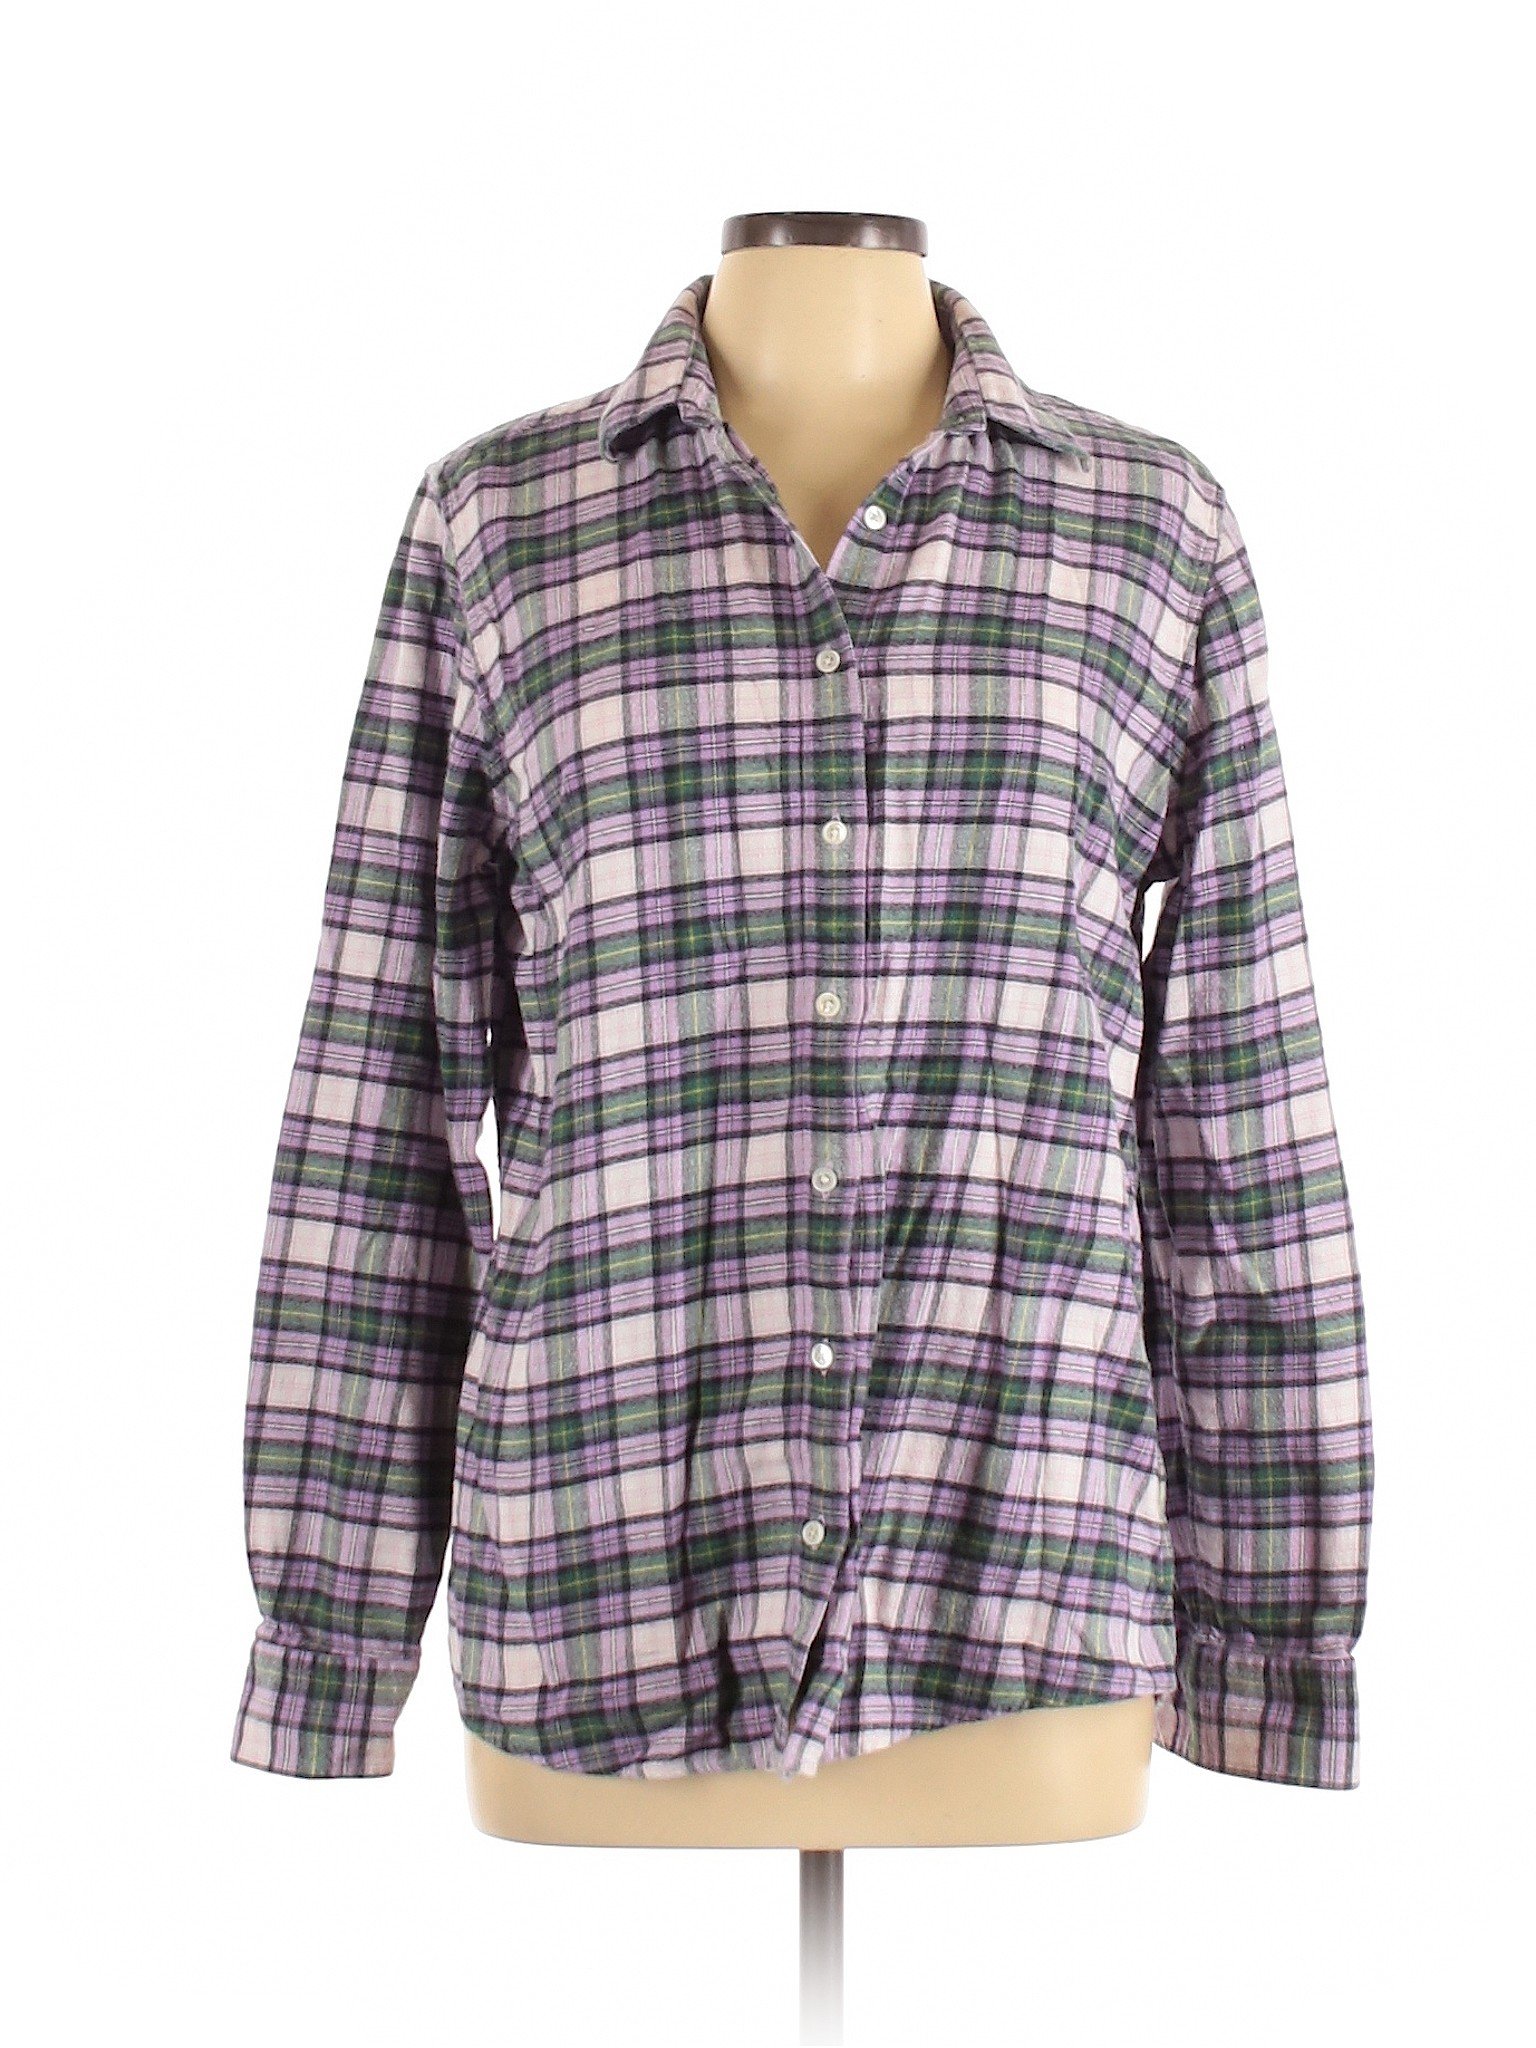 Lands' End Sport Women Purple Long Sleeve Button-Down Shirt L Tall | eBay